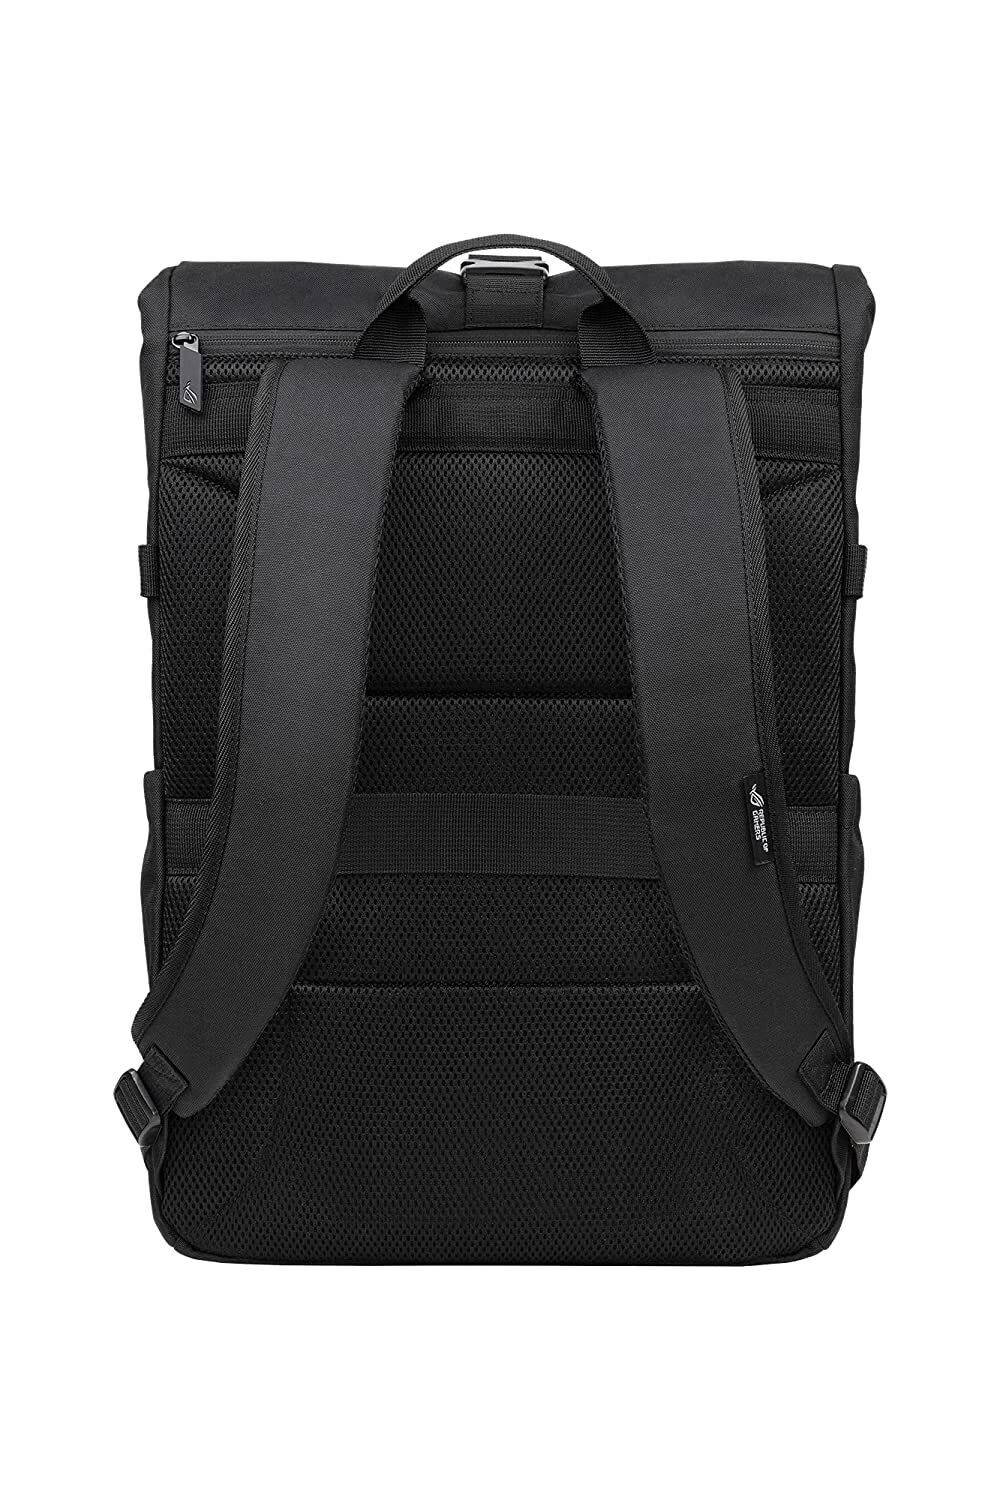 ASUS BP4701 ROG Gaming Backpack 17